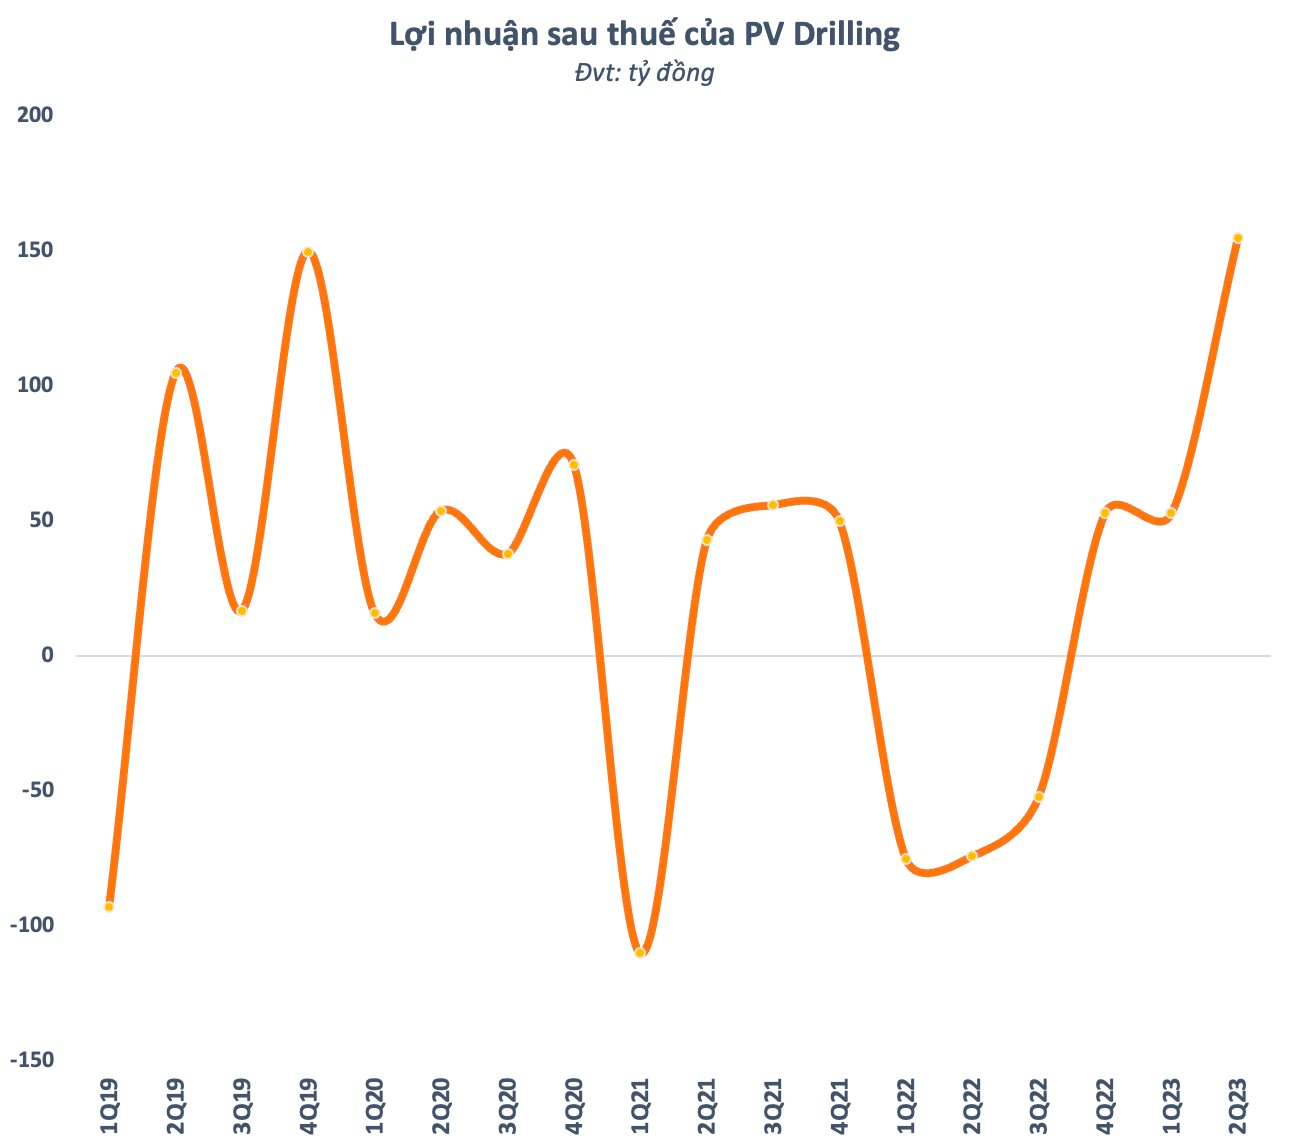 PV Drilling (PVD) báo lãi cao nhất trong vòng 18 quý, vượt xa kế hoạch lợi nhuận chỉ sau nửa năm - Ảnh 1.